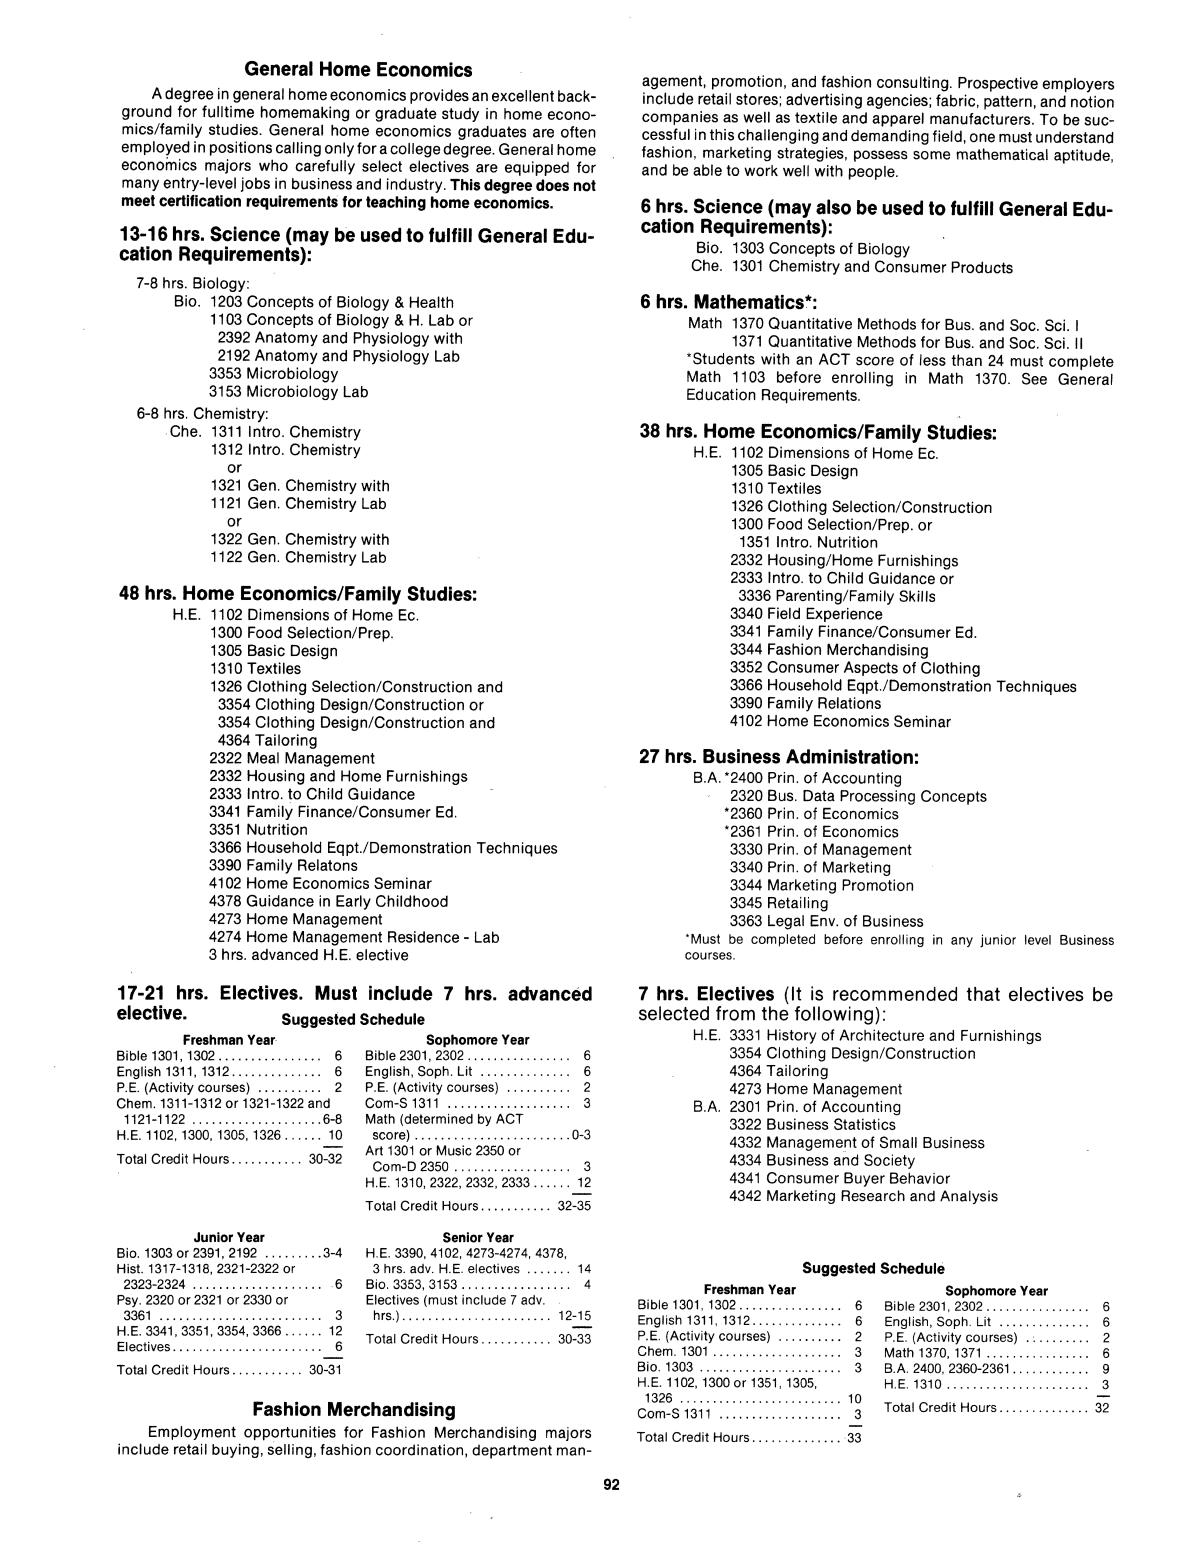 Catalog of Abilene Christian University, 1983-1984
                                                
                                                    92
                                                